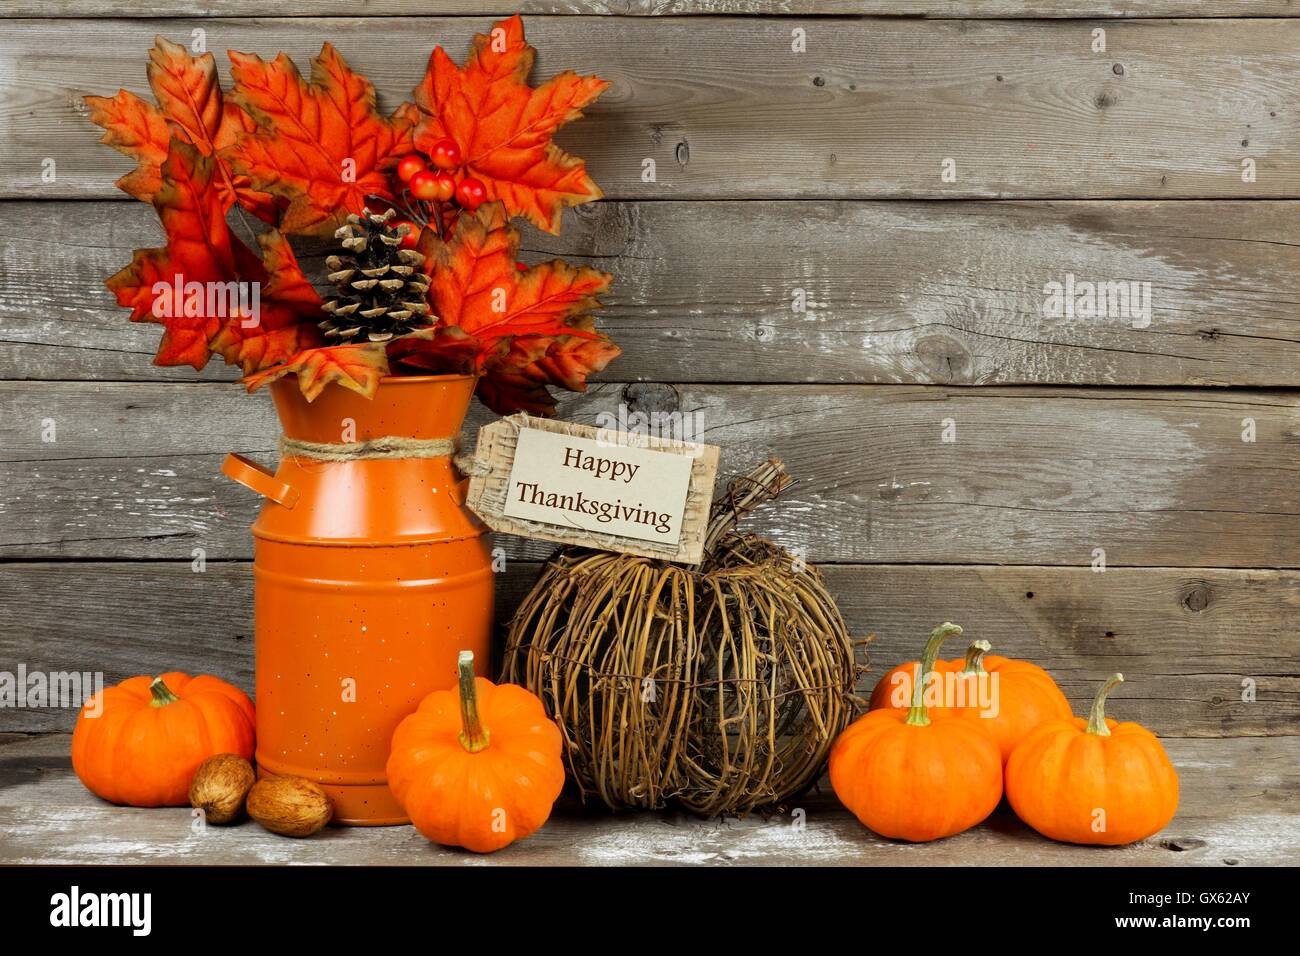 Feliz Día de Acción de Gracias, calabazas y etiqueta otoño decoracion con fondo de madera rústica Foto de stock